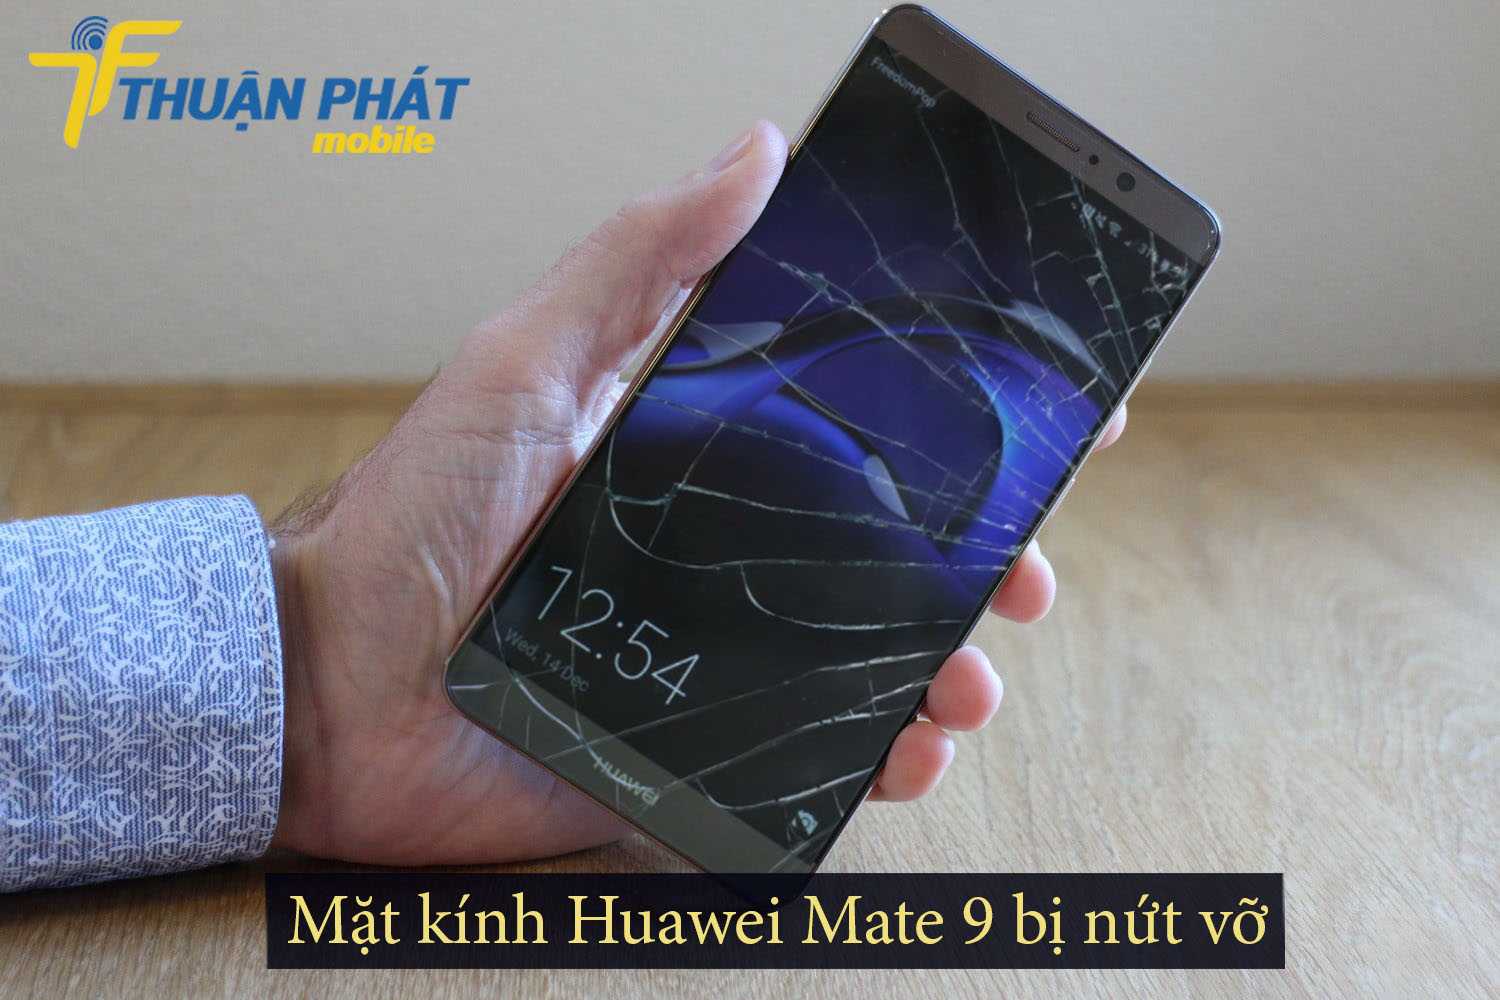 Mặt kính Huawei Mate 9 bị nứt vỡ